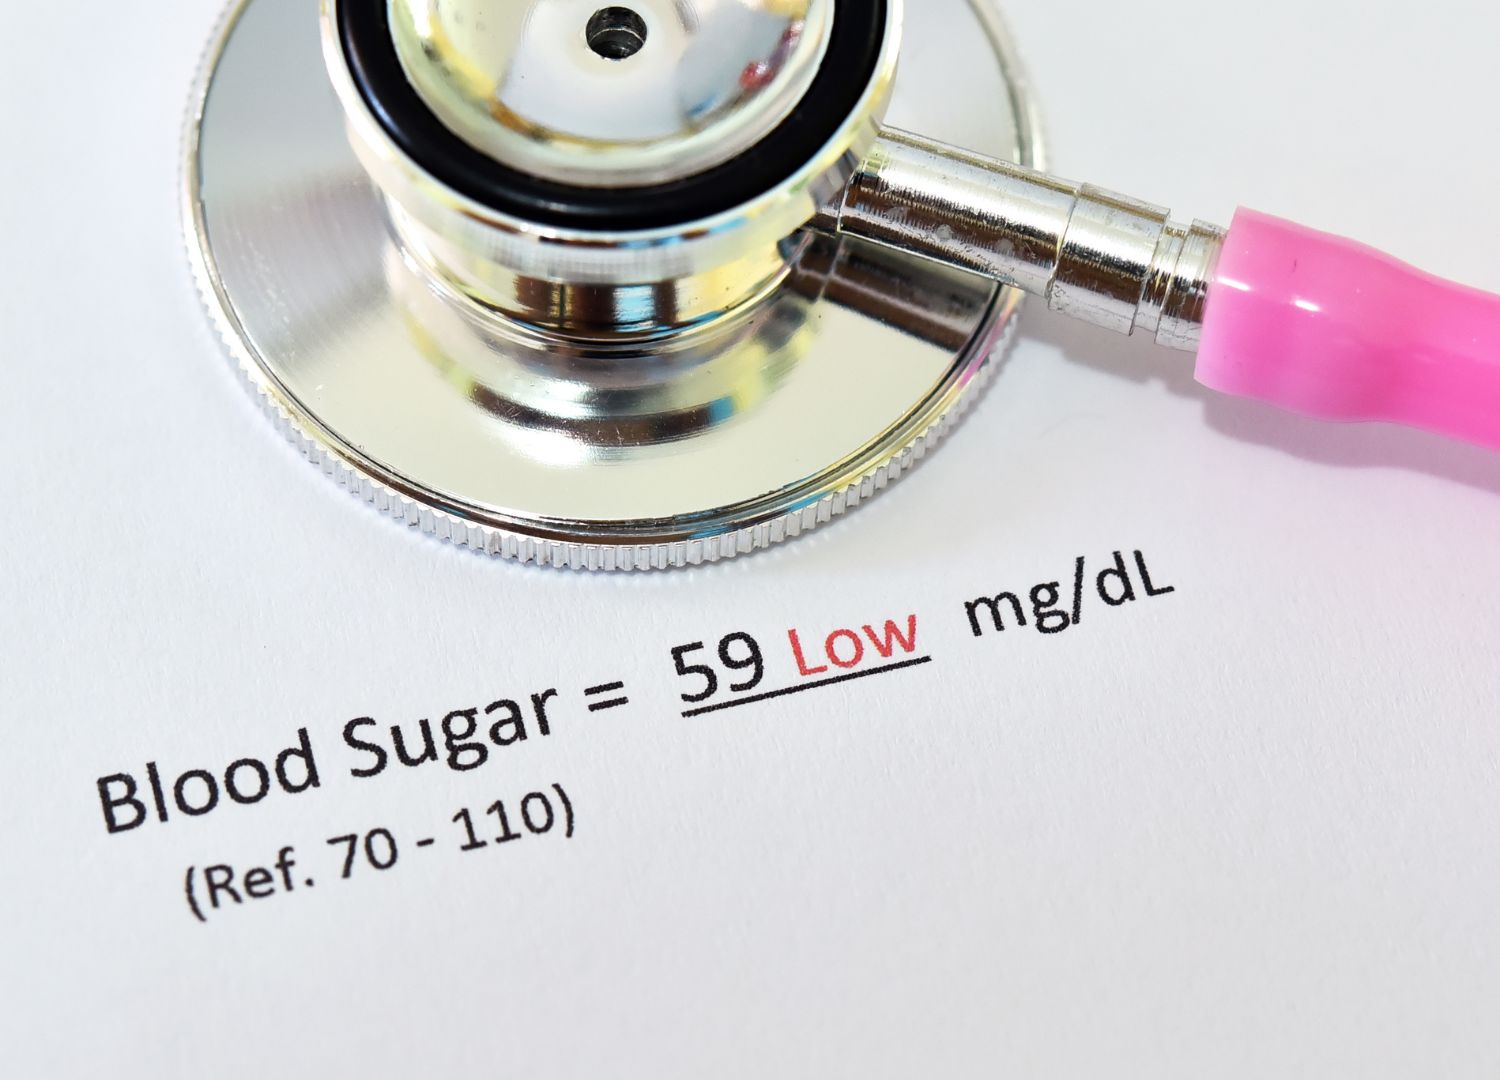 Hypoglycemia - Low blood sugar